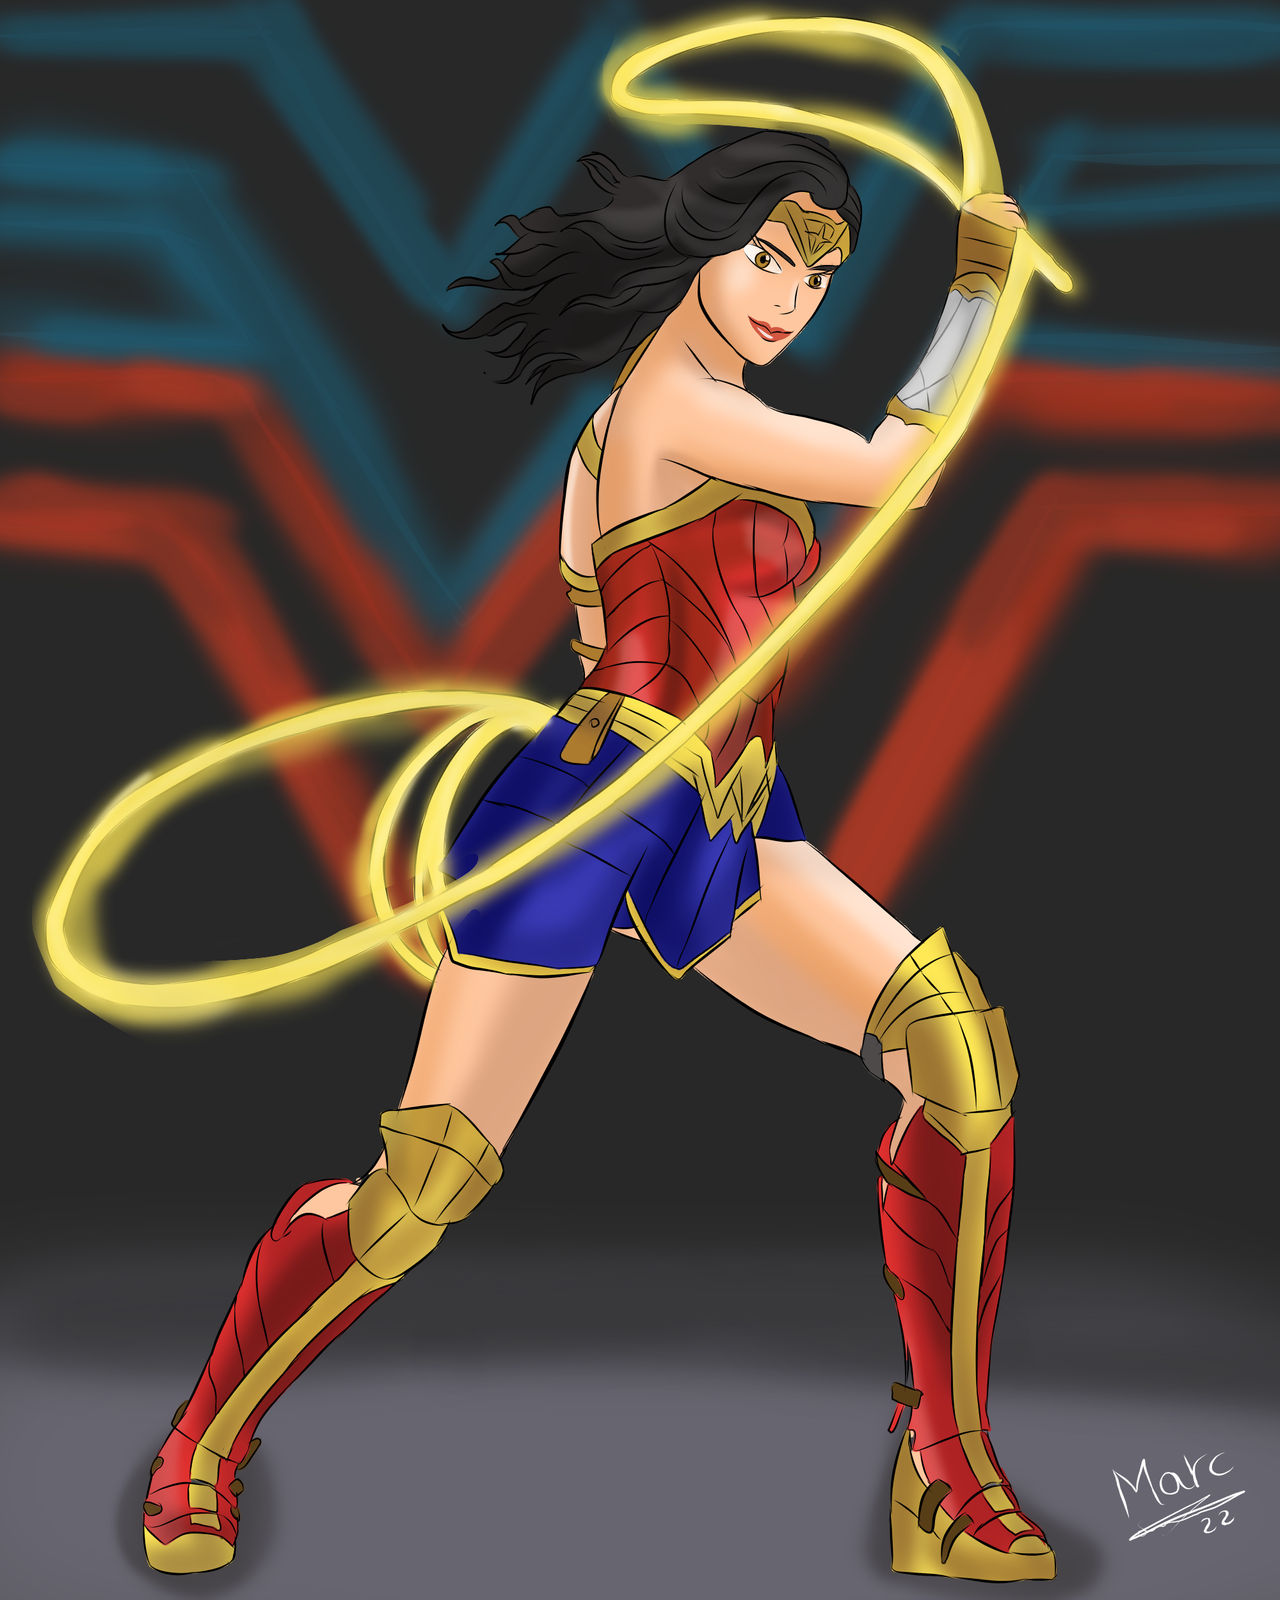 Dibujo De Wonder Woman by MarcDibujante on DeviantArt